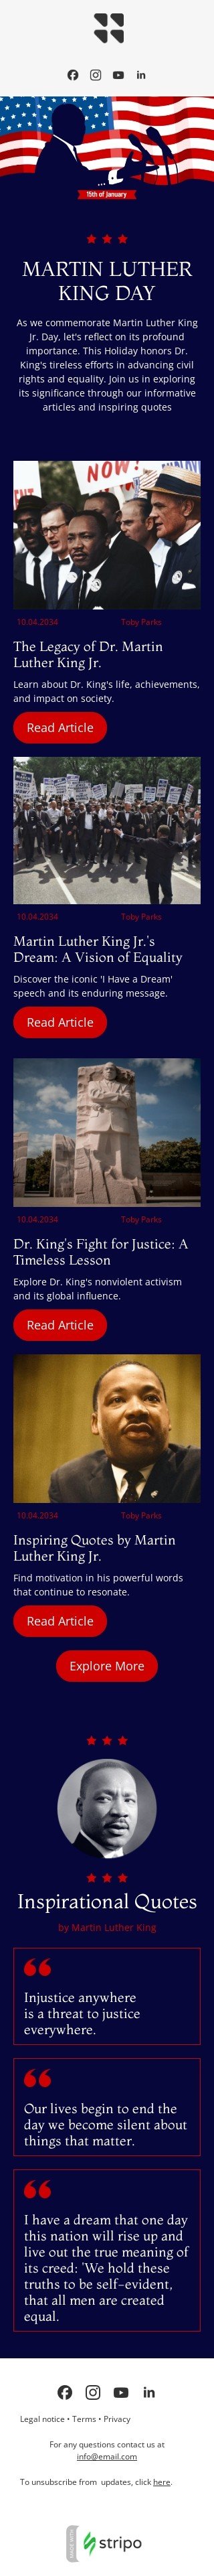 Plantilla de correo electrónico «Descubre el significado» de Día de Martin Luther King Jr. para la industria de publicaciones y blogs Vista de móvil